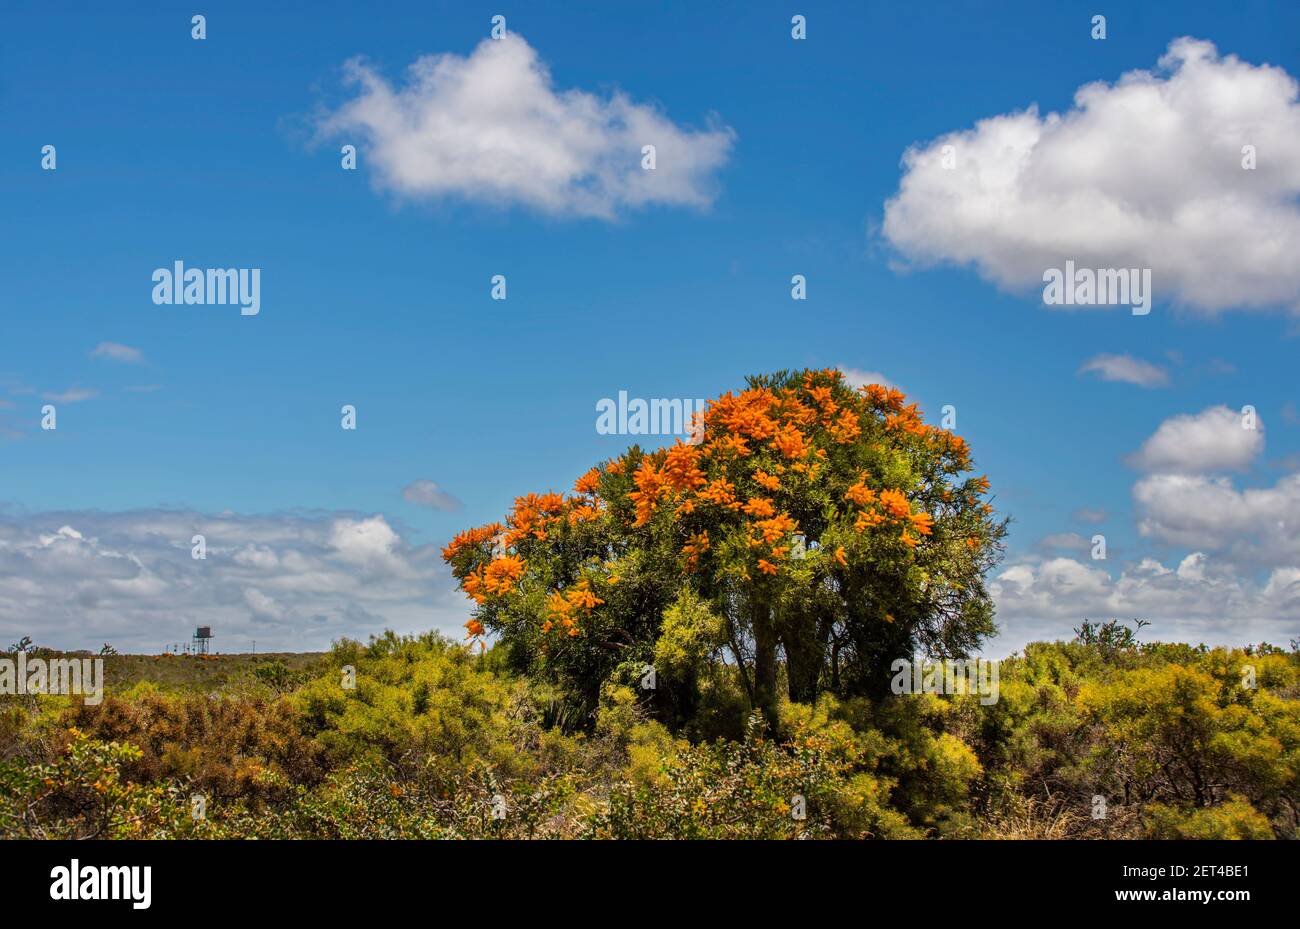 Western Australian Christmas Tree in rural landscape, Western Australia, Australia Stock Photo